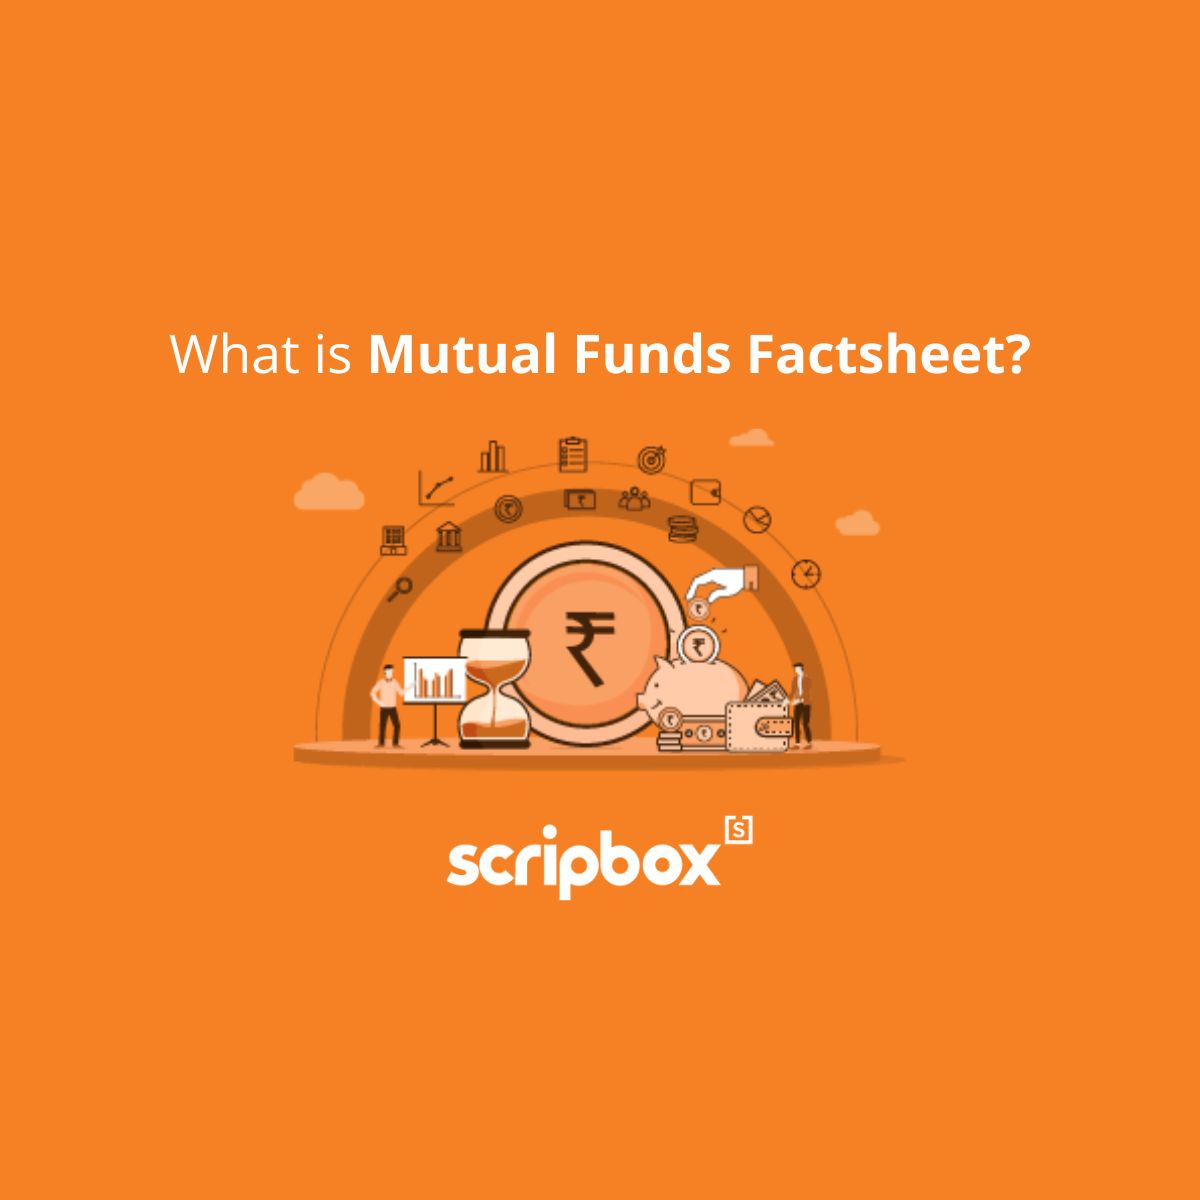 mutual funds factsheet